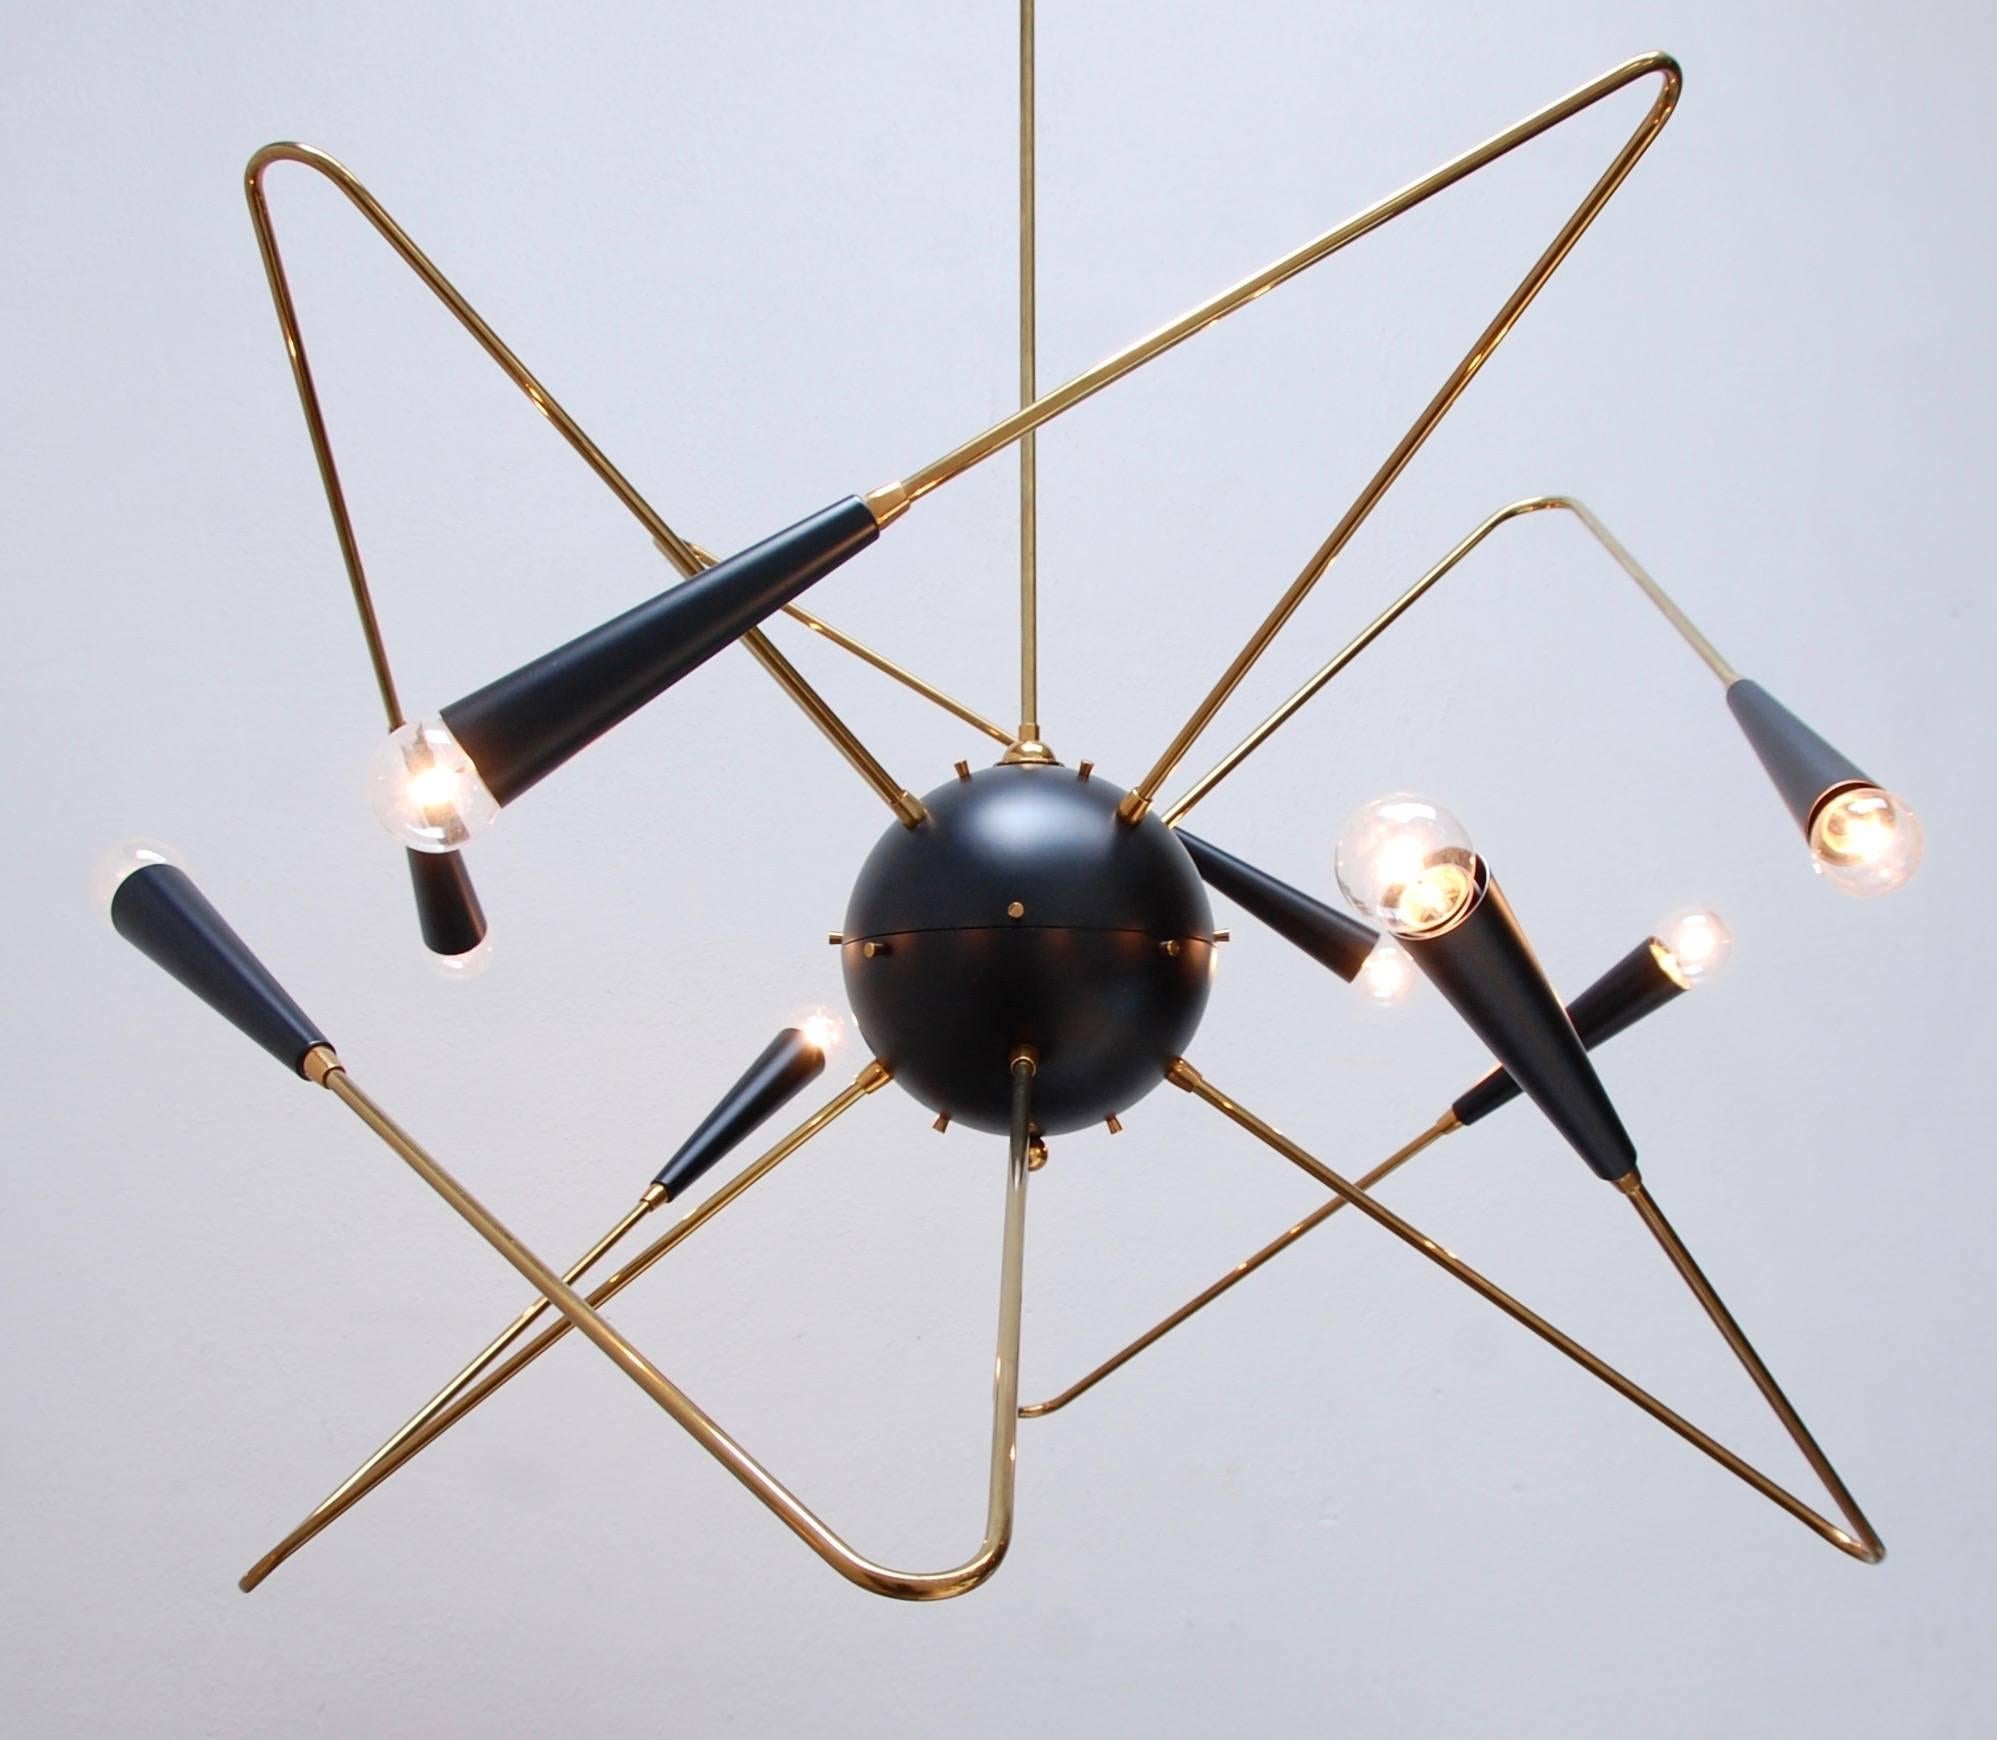 Atomarer Sputnik-Kronleuchter im Geiste des Mid-Century Modern Design. 
Höhe der Halterung 28